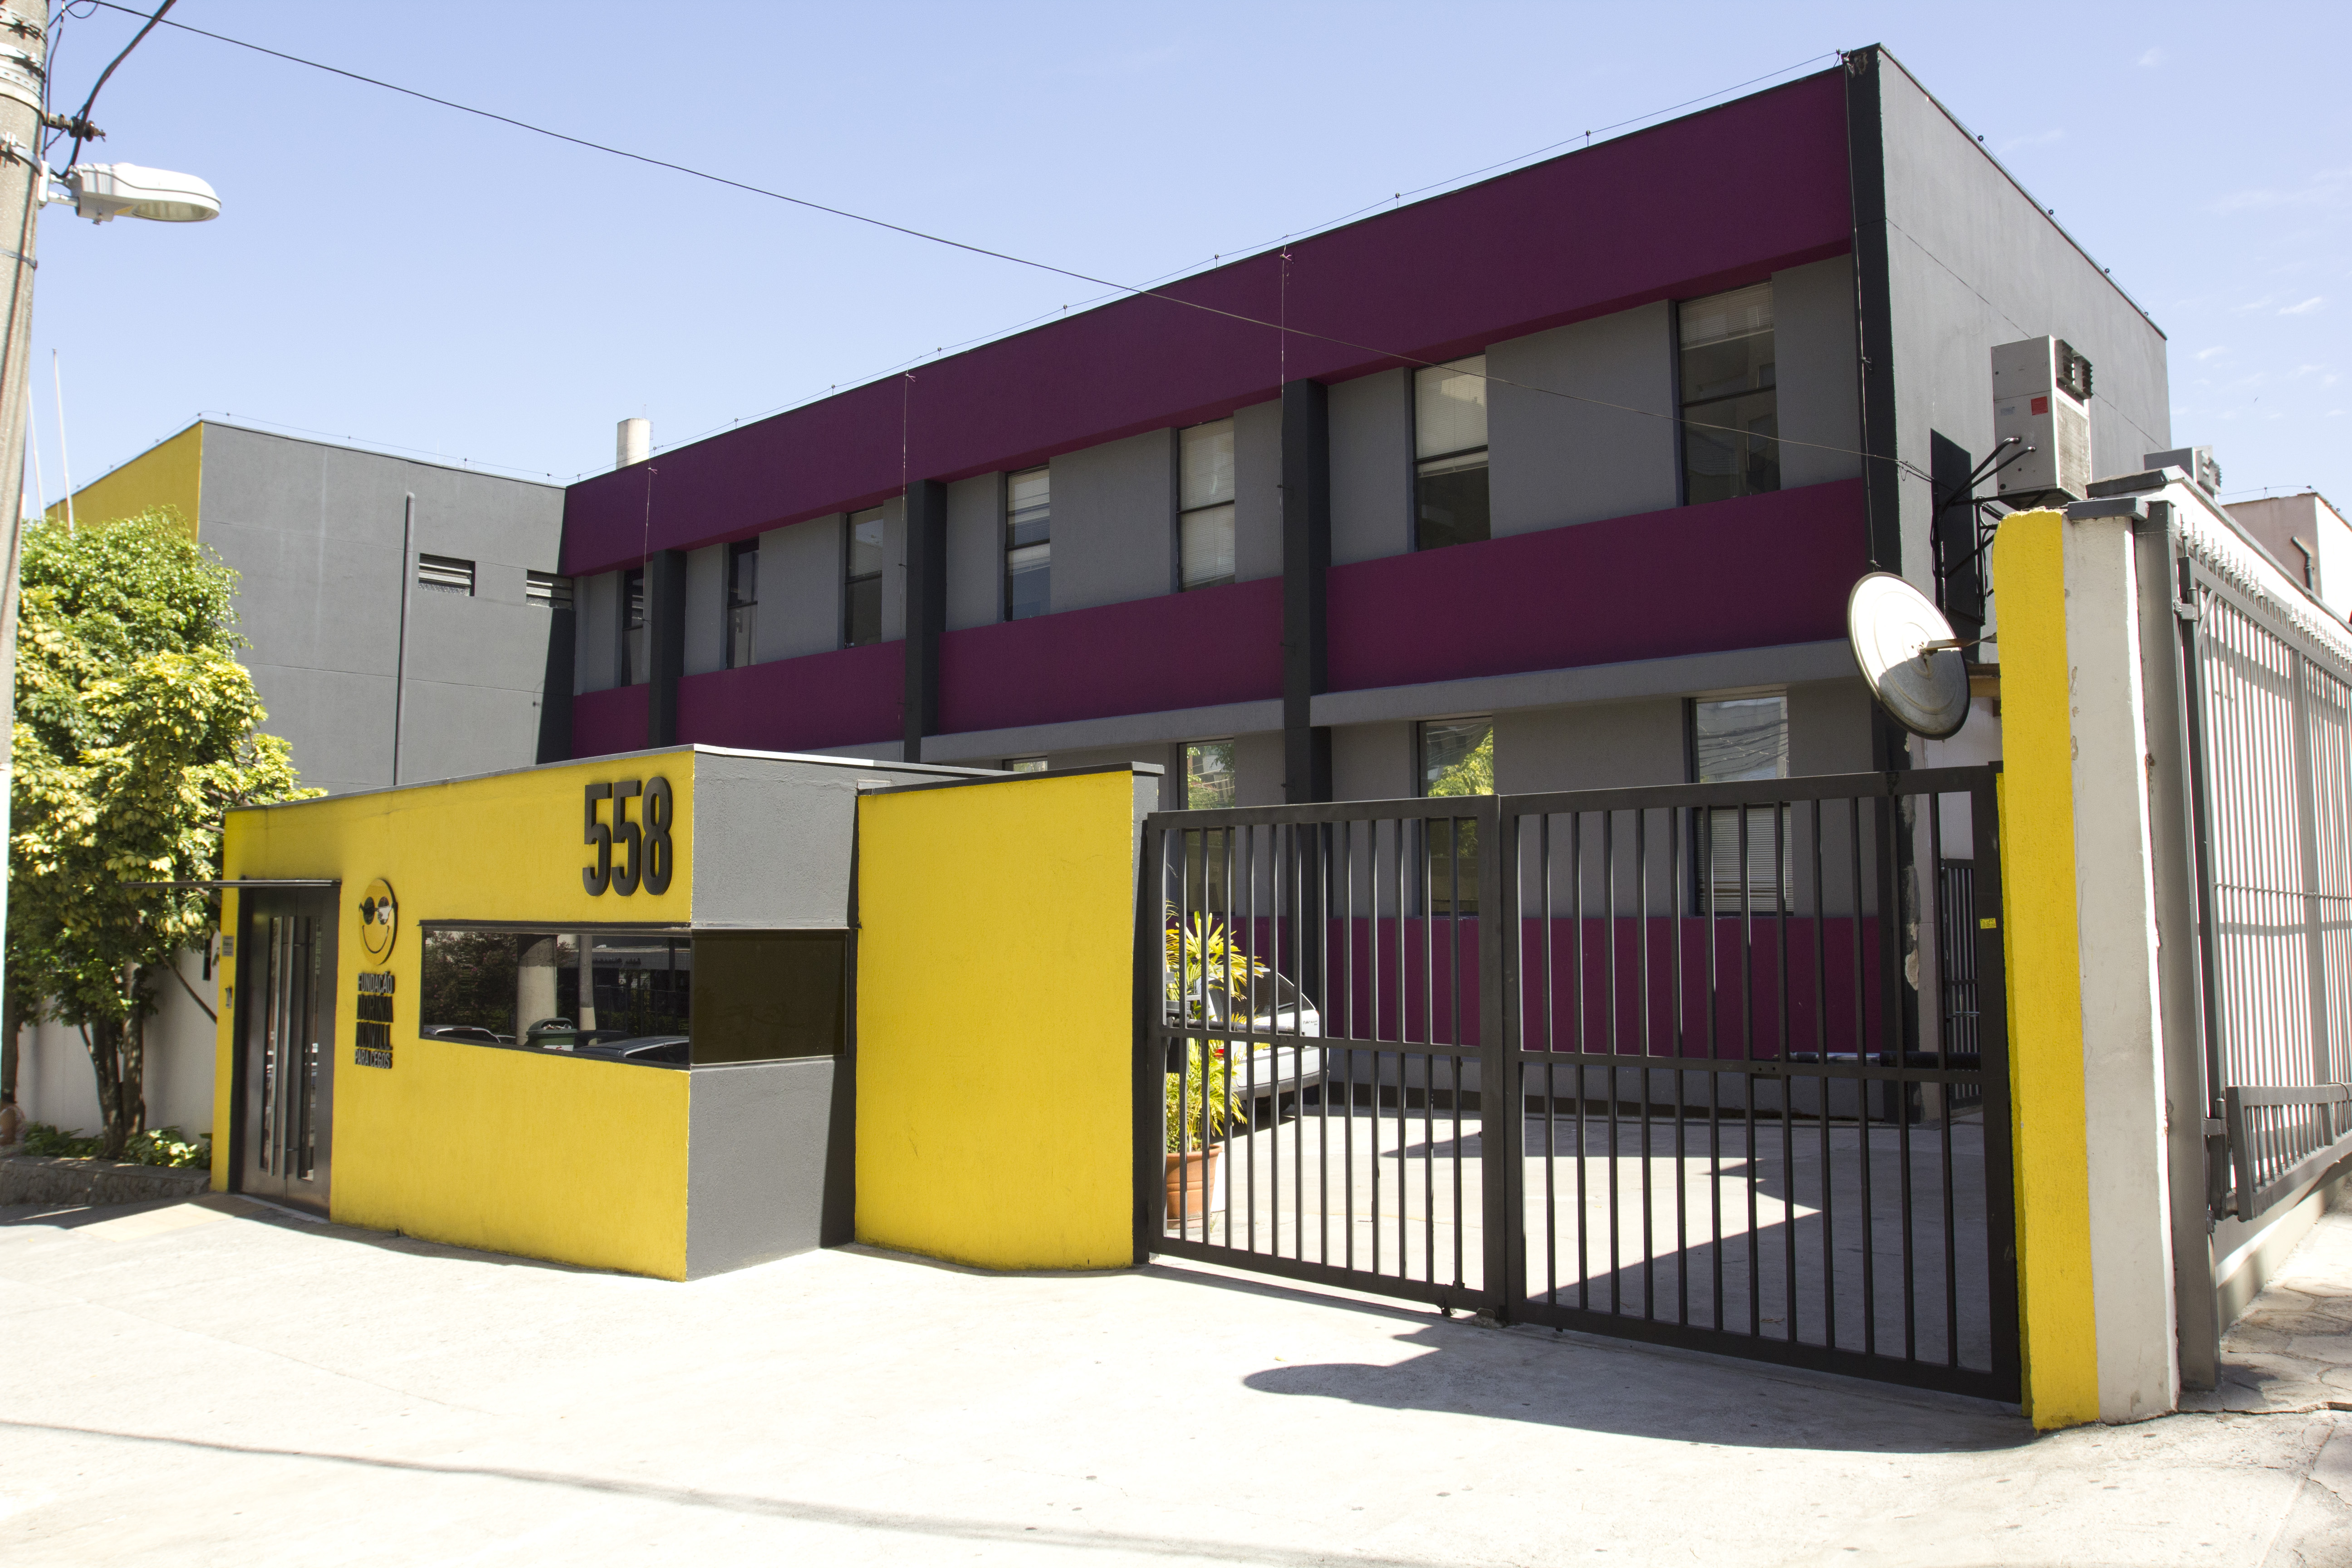 Foto da atual fachada da Fundação Dorina, com destaque para as cores amarela, cinza roxa, com o logotipo da Fundação e o número do prédio em relevos, fixados na parede. de entrada.